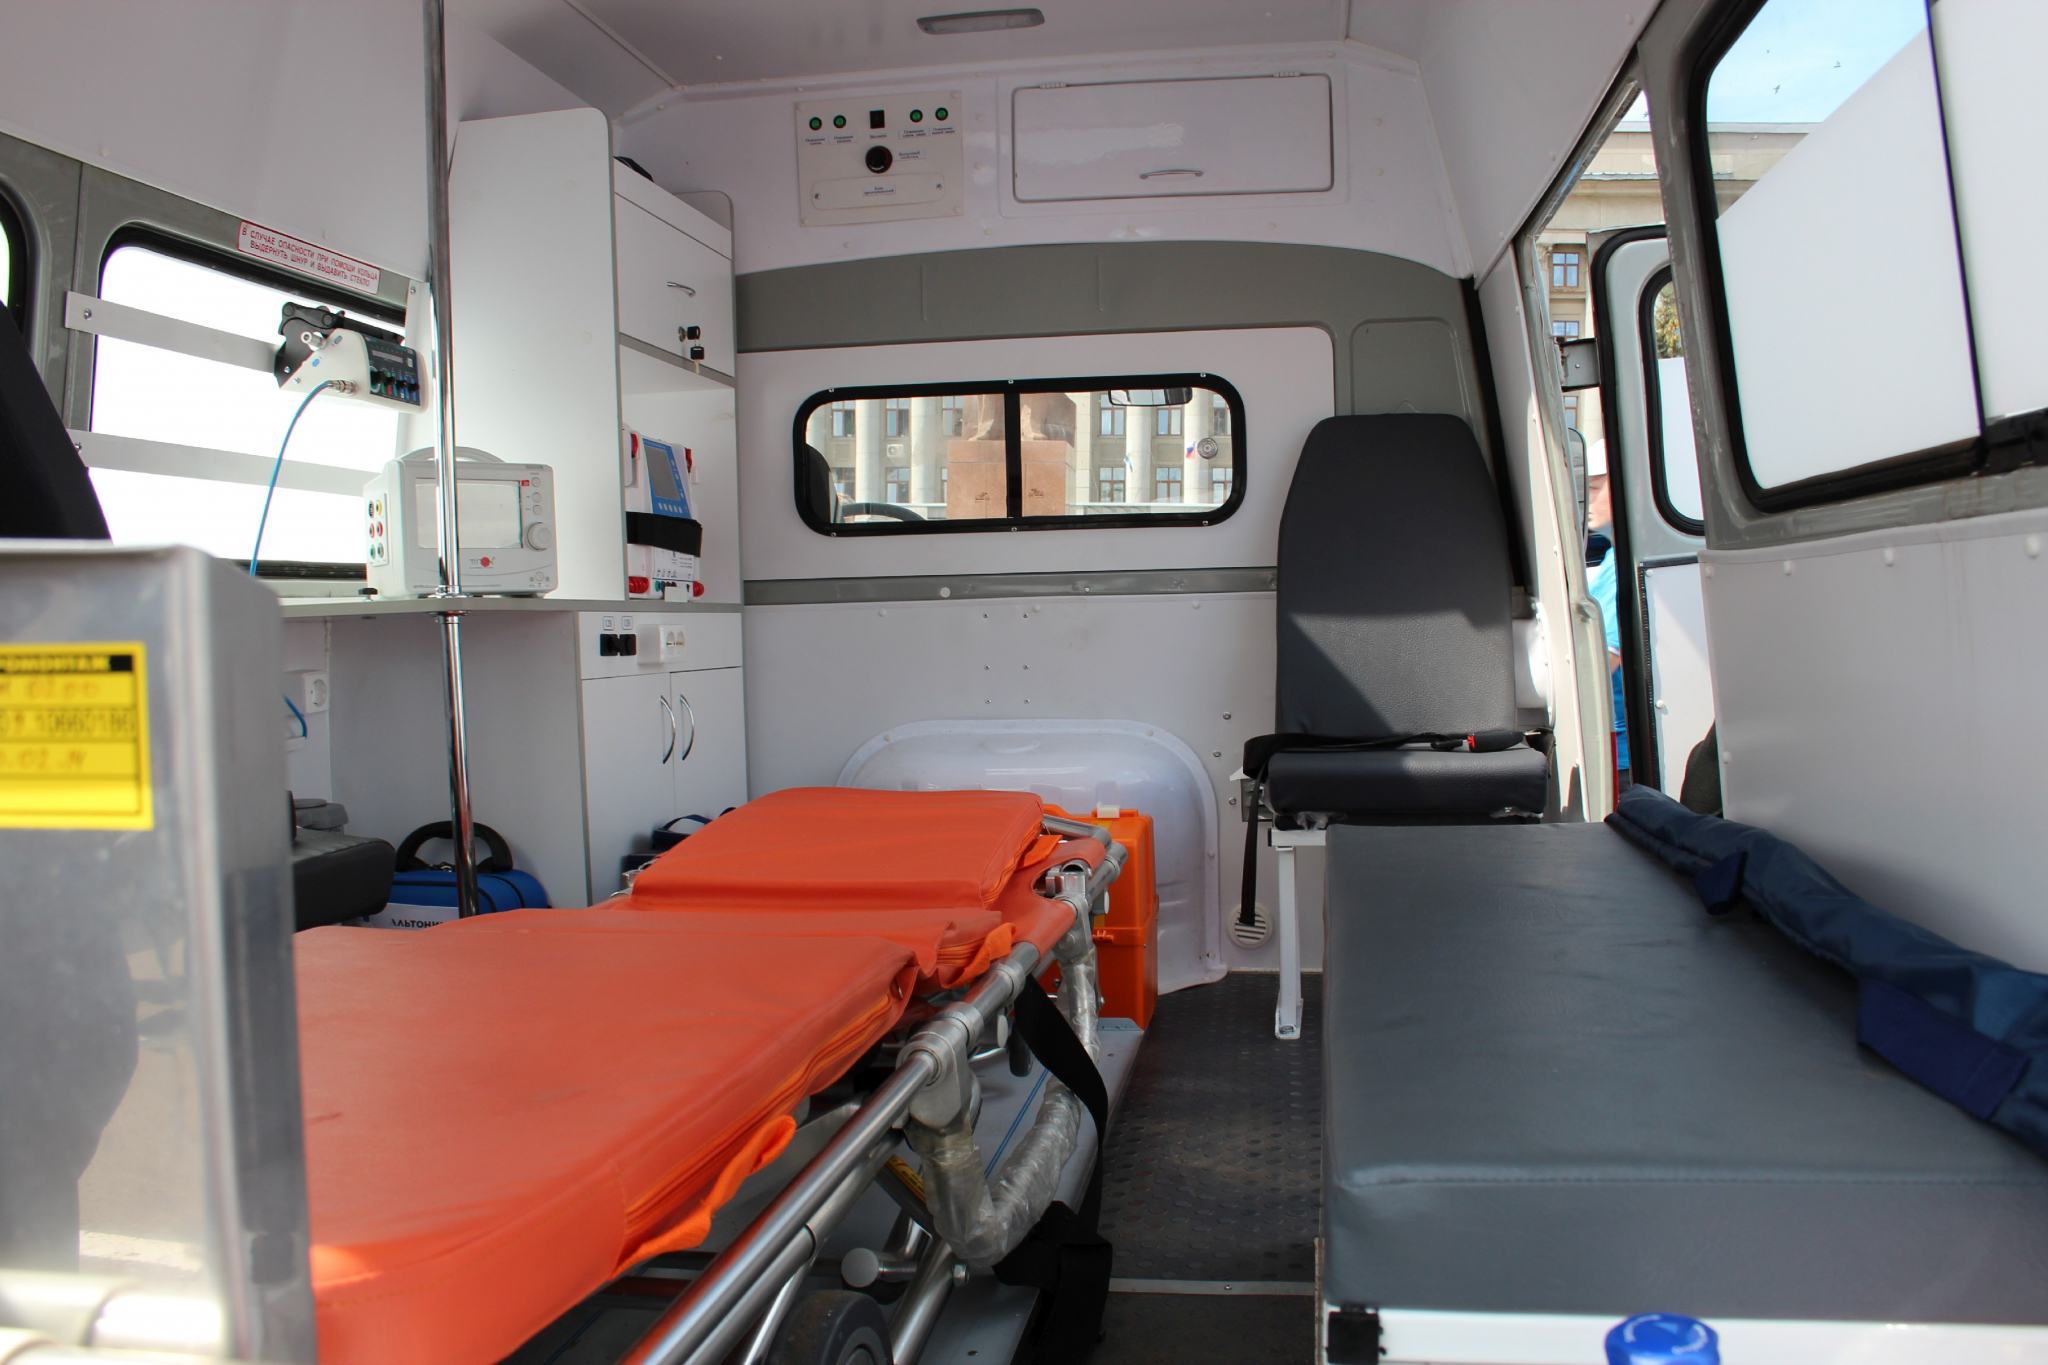 Стало известно, кто пострадал в аварии с микроавтобусом в Пензенской области